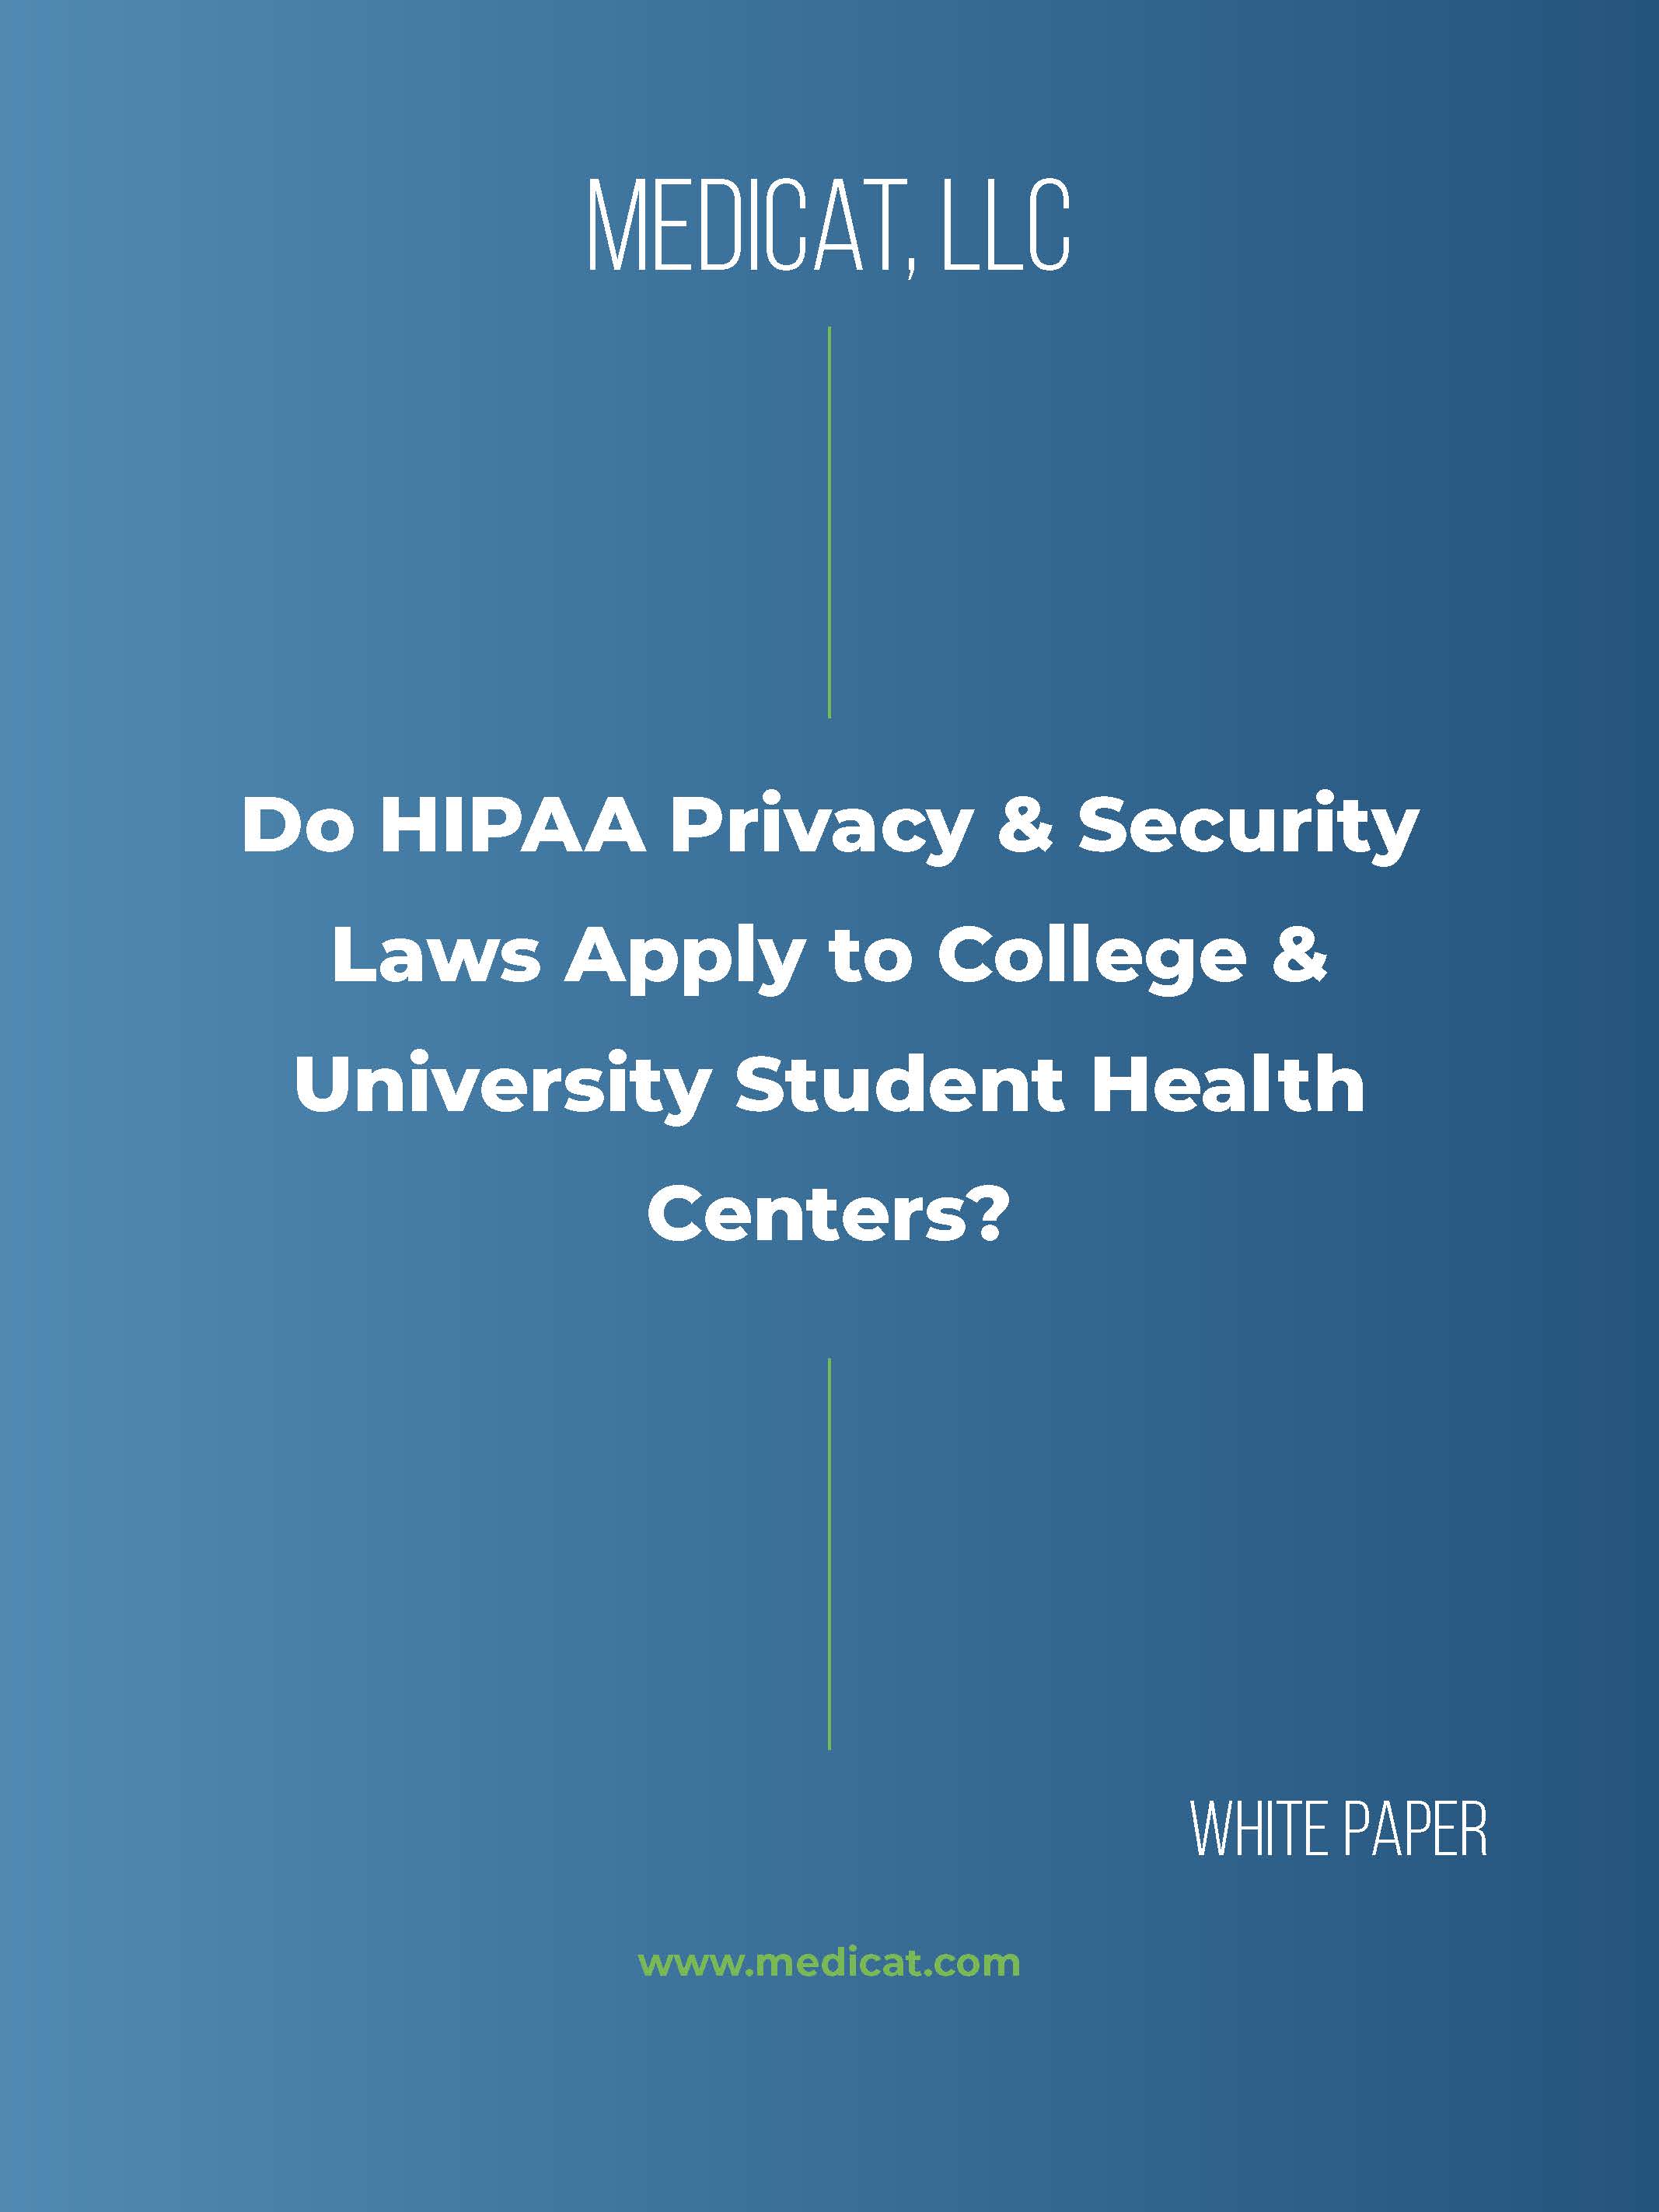 HIPAA White Paper Cover